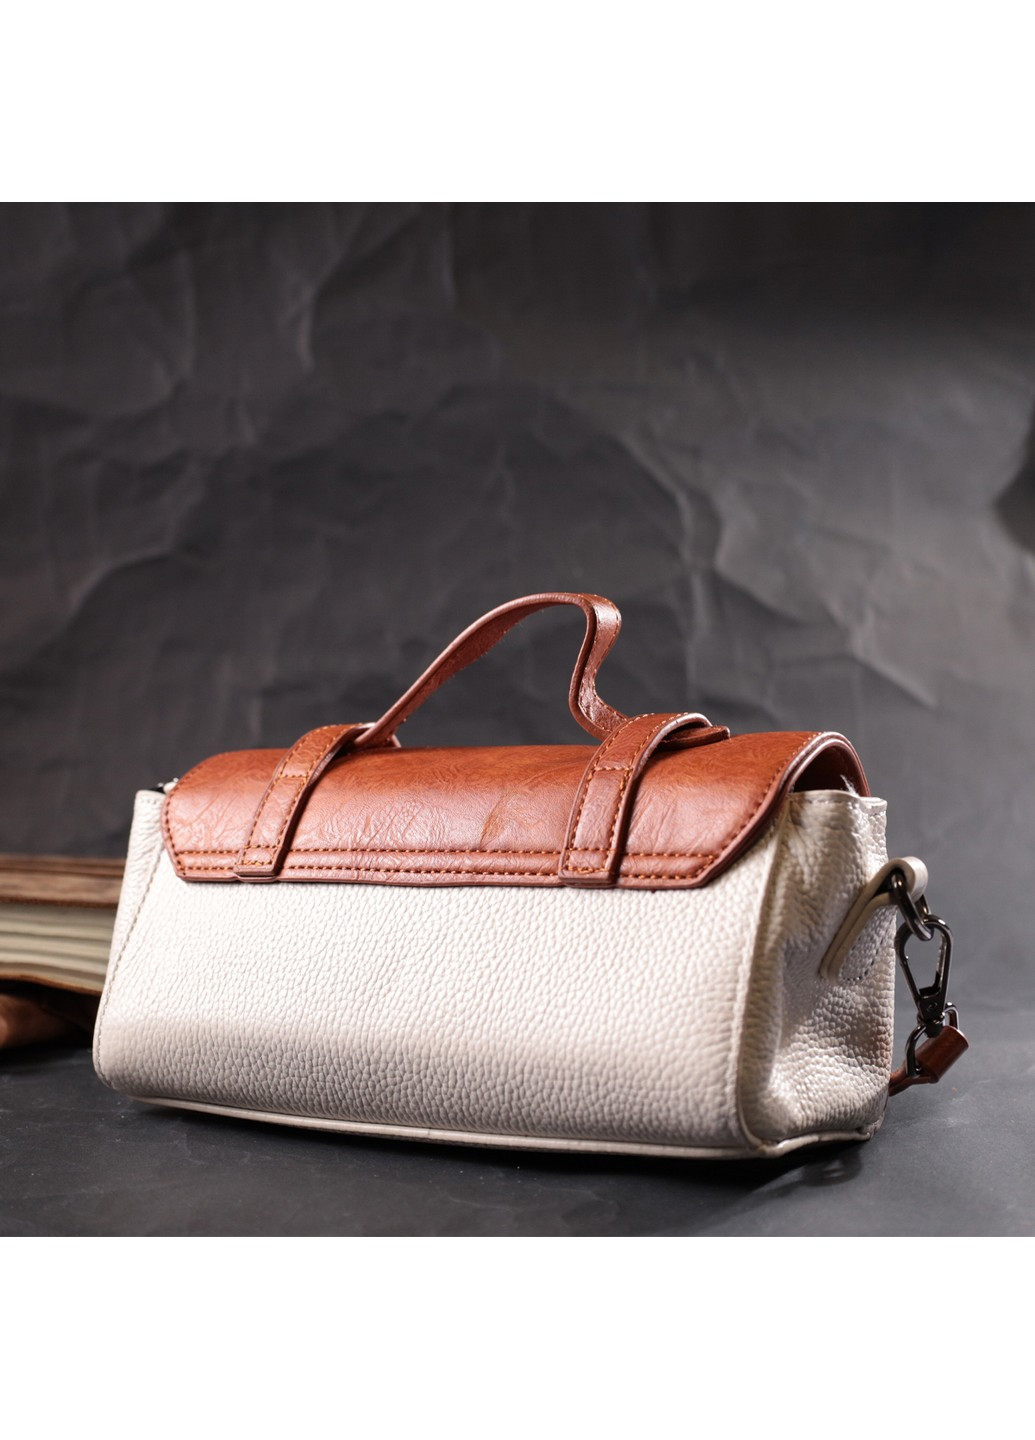 Оригинальная женская сумка в винтажном стиле из натуральной кожи 22350 Белая Vintage (276457549)